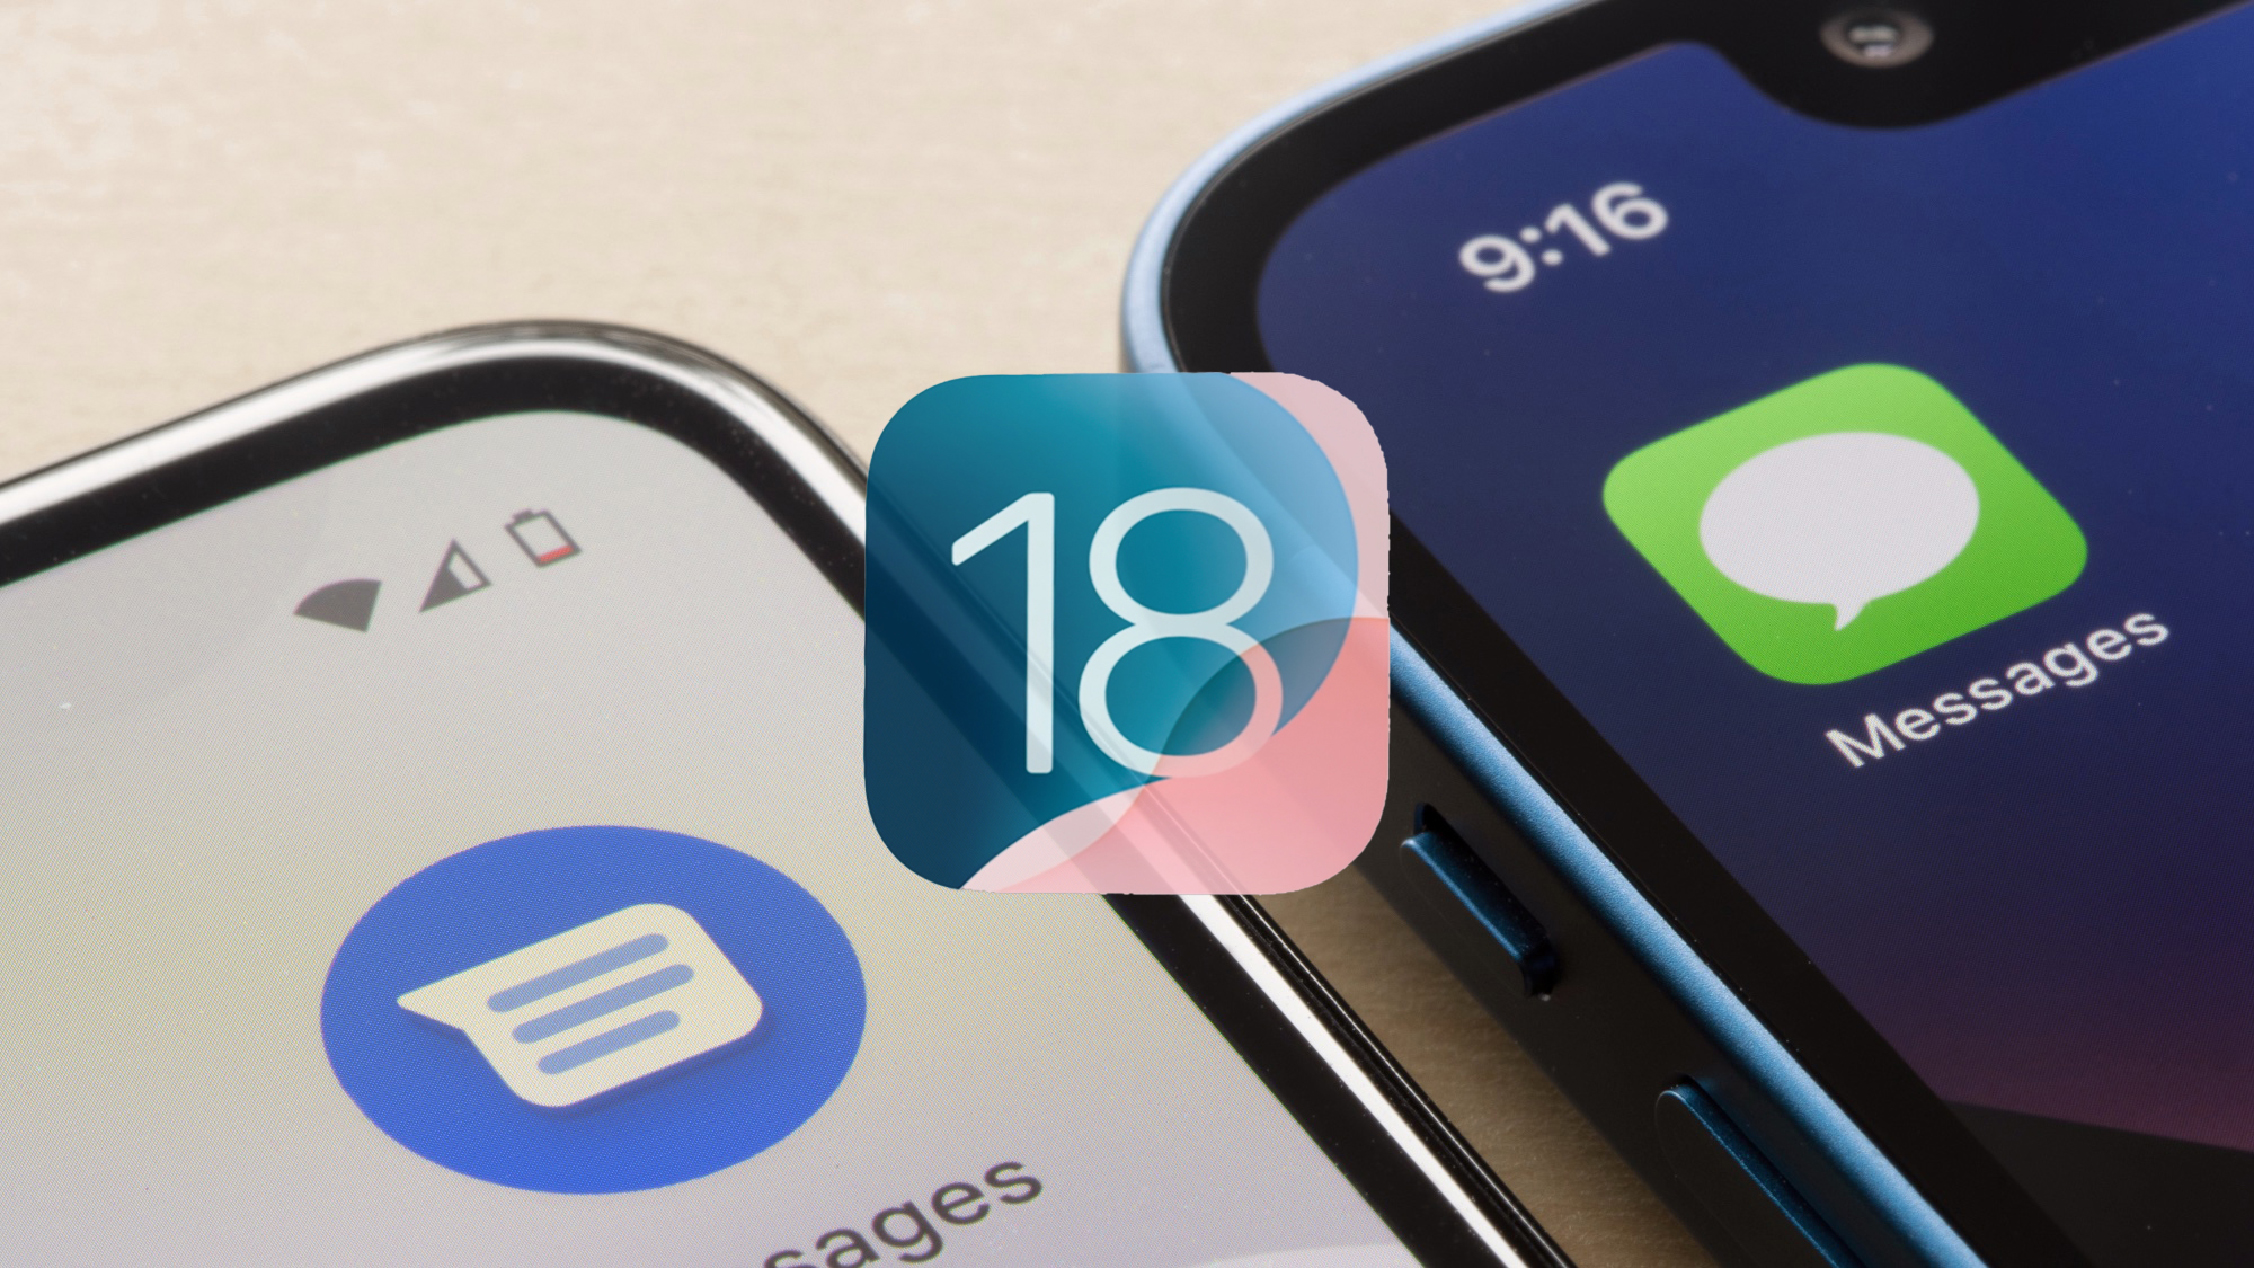 iOS 18 đã hỗ trợ giao thức tin nhắn RCS, người dùng iPhone và Android sẽ gửi được ảnh/video cho nhau